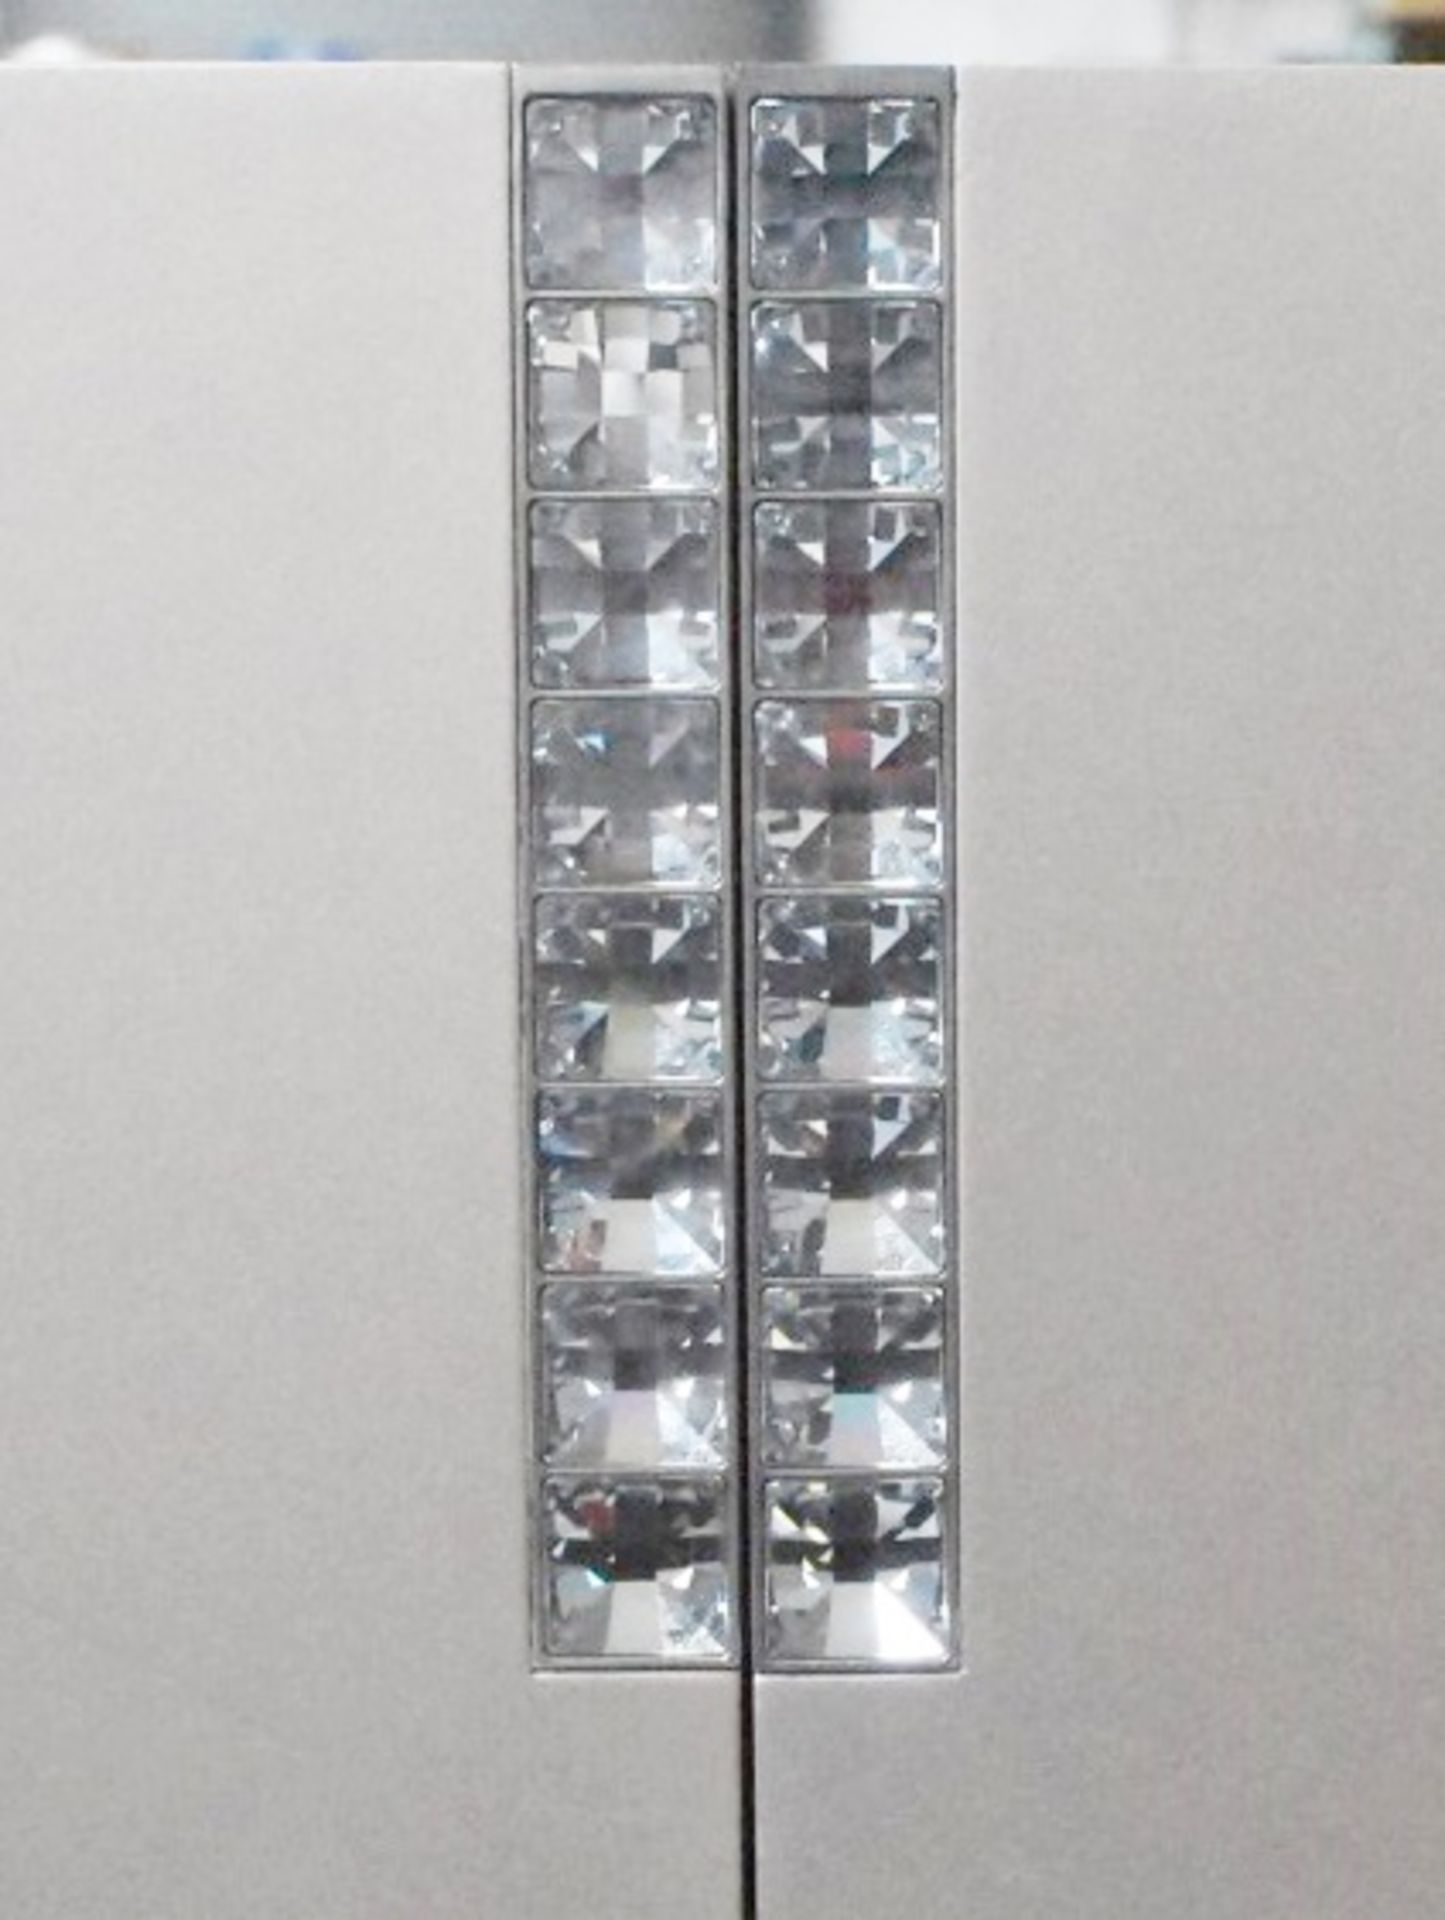 1 x SELVA 'Lui & Lei' Solid Wood 2 Door Jewelry Cabinet In Gray Veneer With Swarovski Crystals - Image 4 of 15